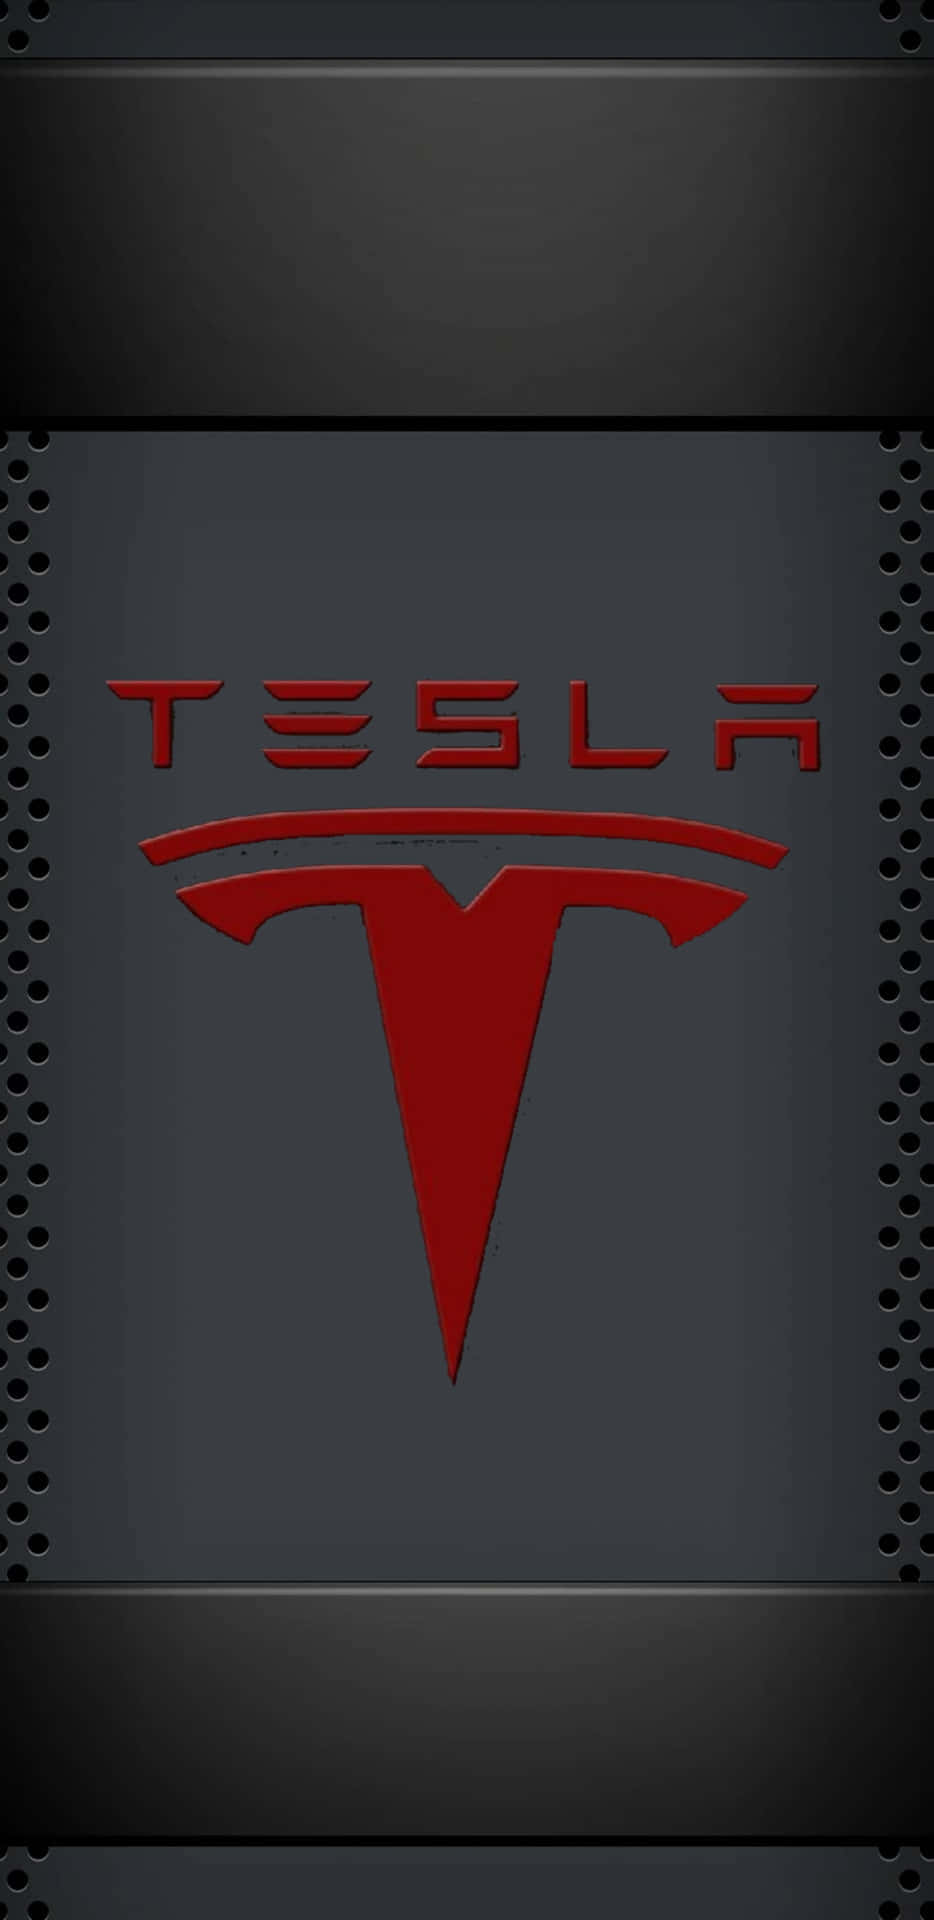 Teslalogo-wallpaper - Tesla-logo-wallpaper Wallpaper